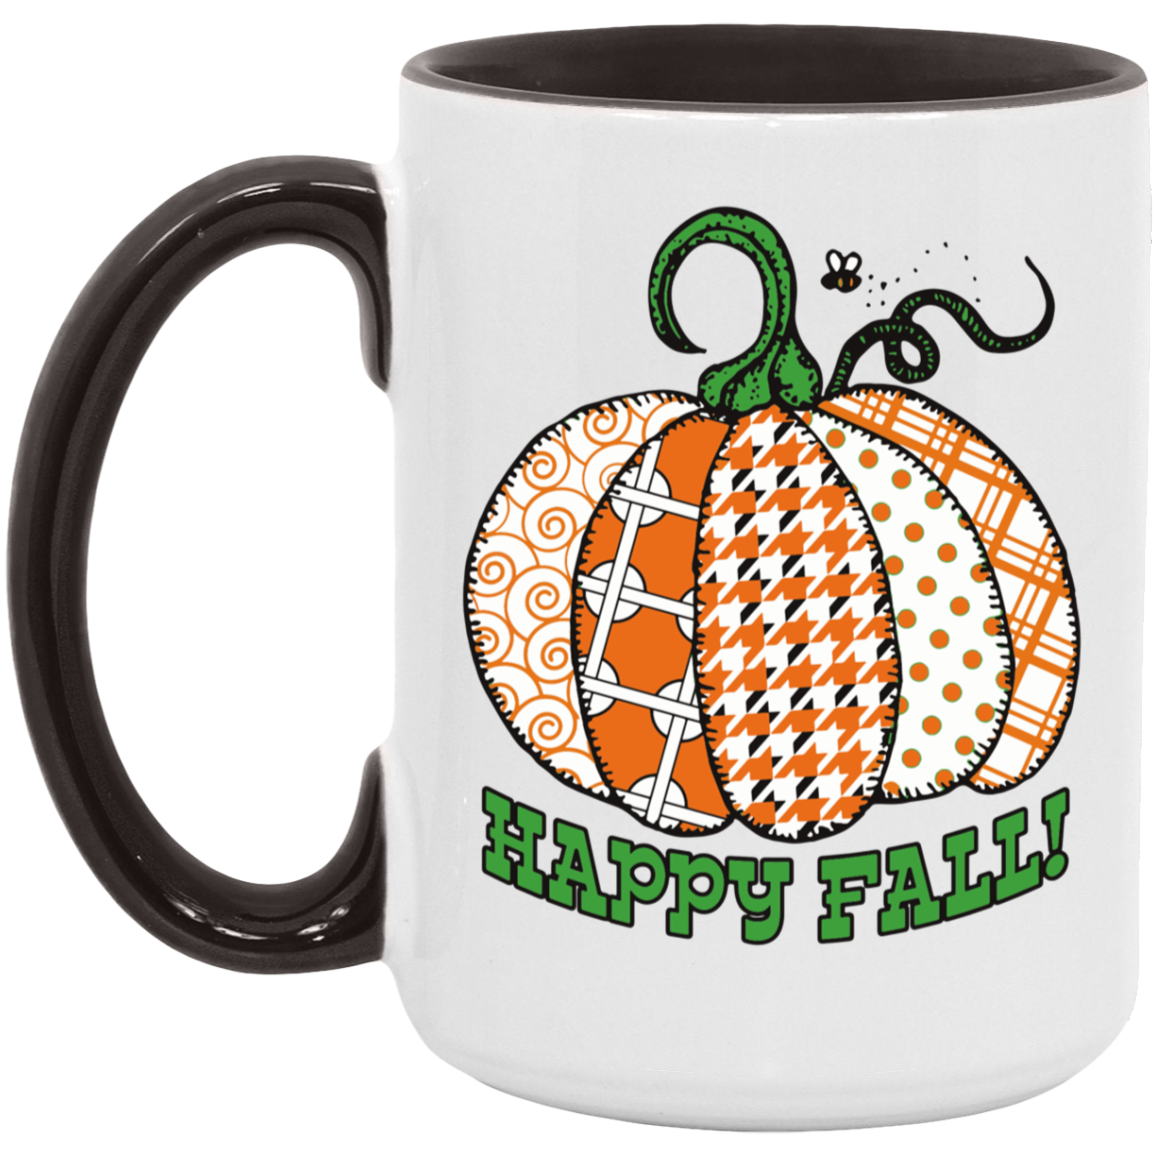 Happy Fall! Mugs